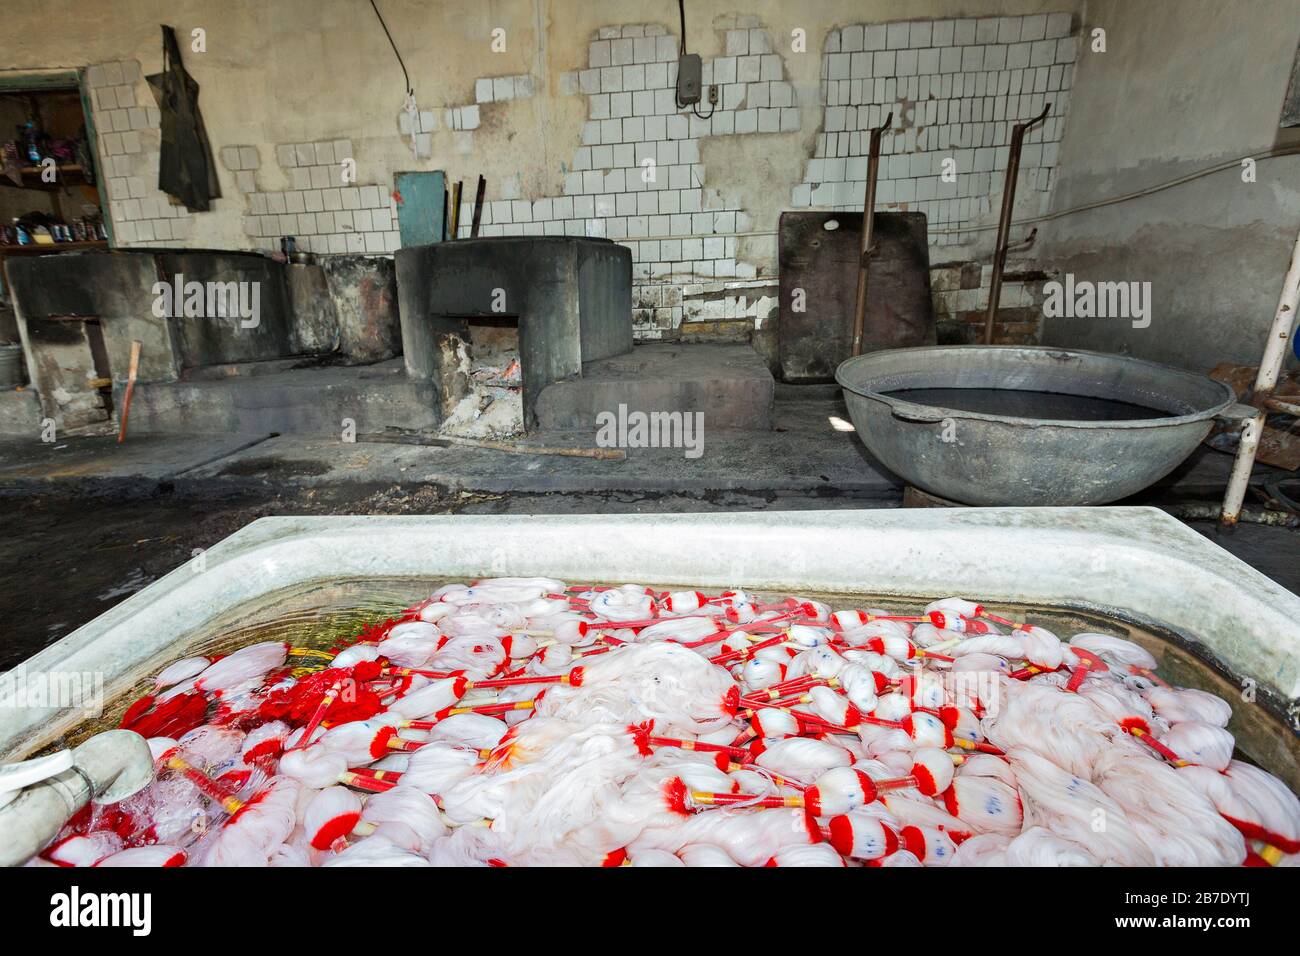 Seidenfabrik mit Seidenfäden in zu färbendem Wasser, in Margilan, Usbekistan Stockfoto